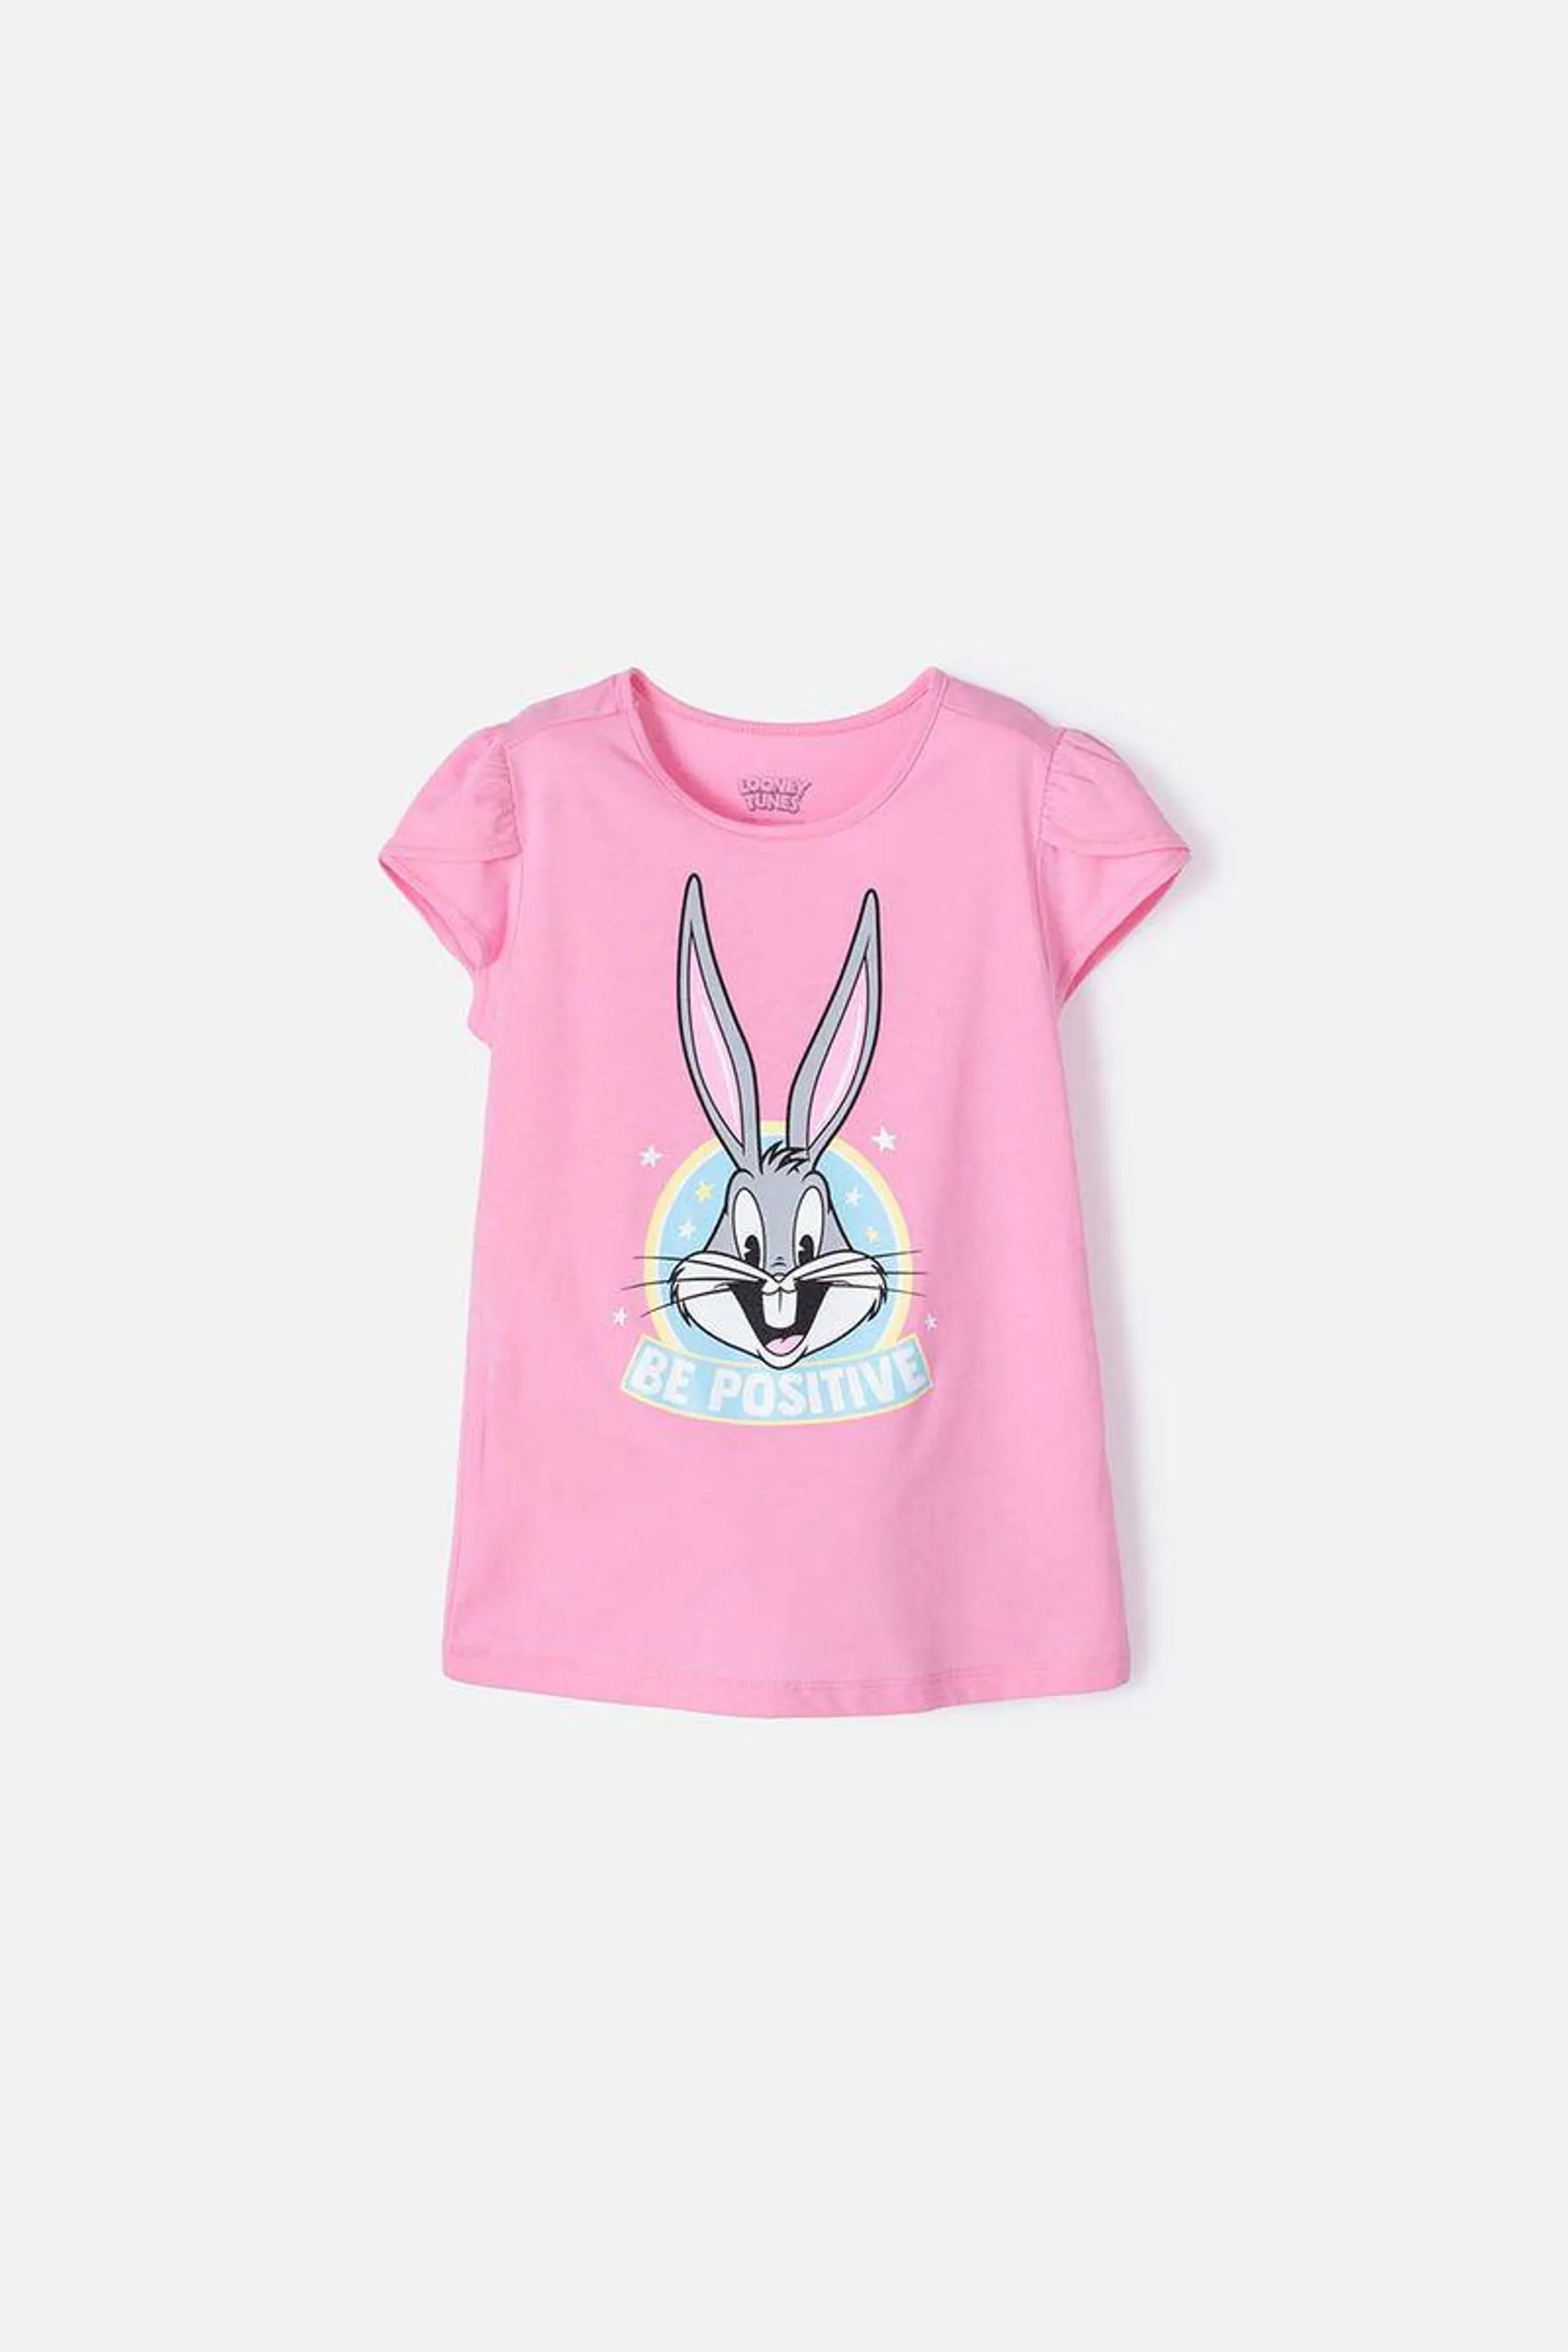 Camiseta de Looney Tunes manga corta rosada para niña